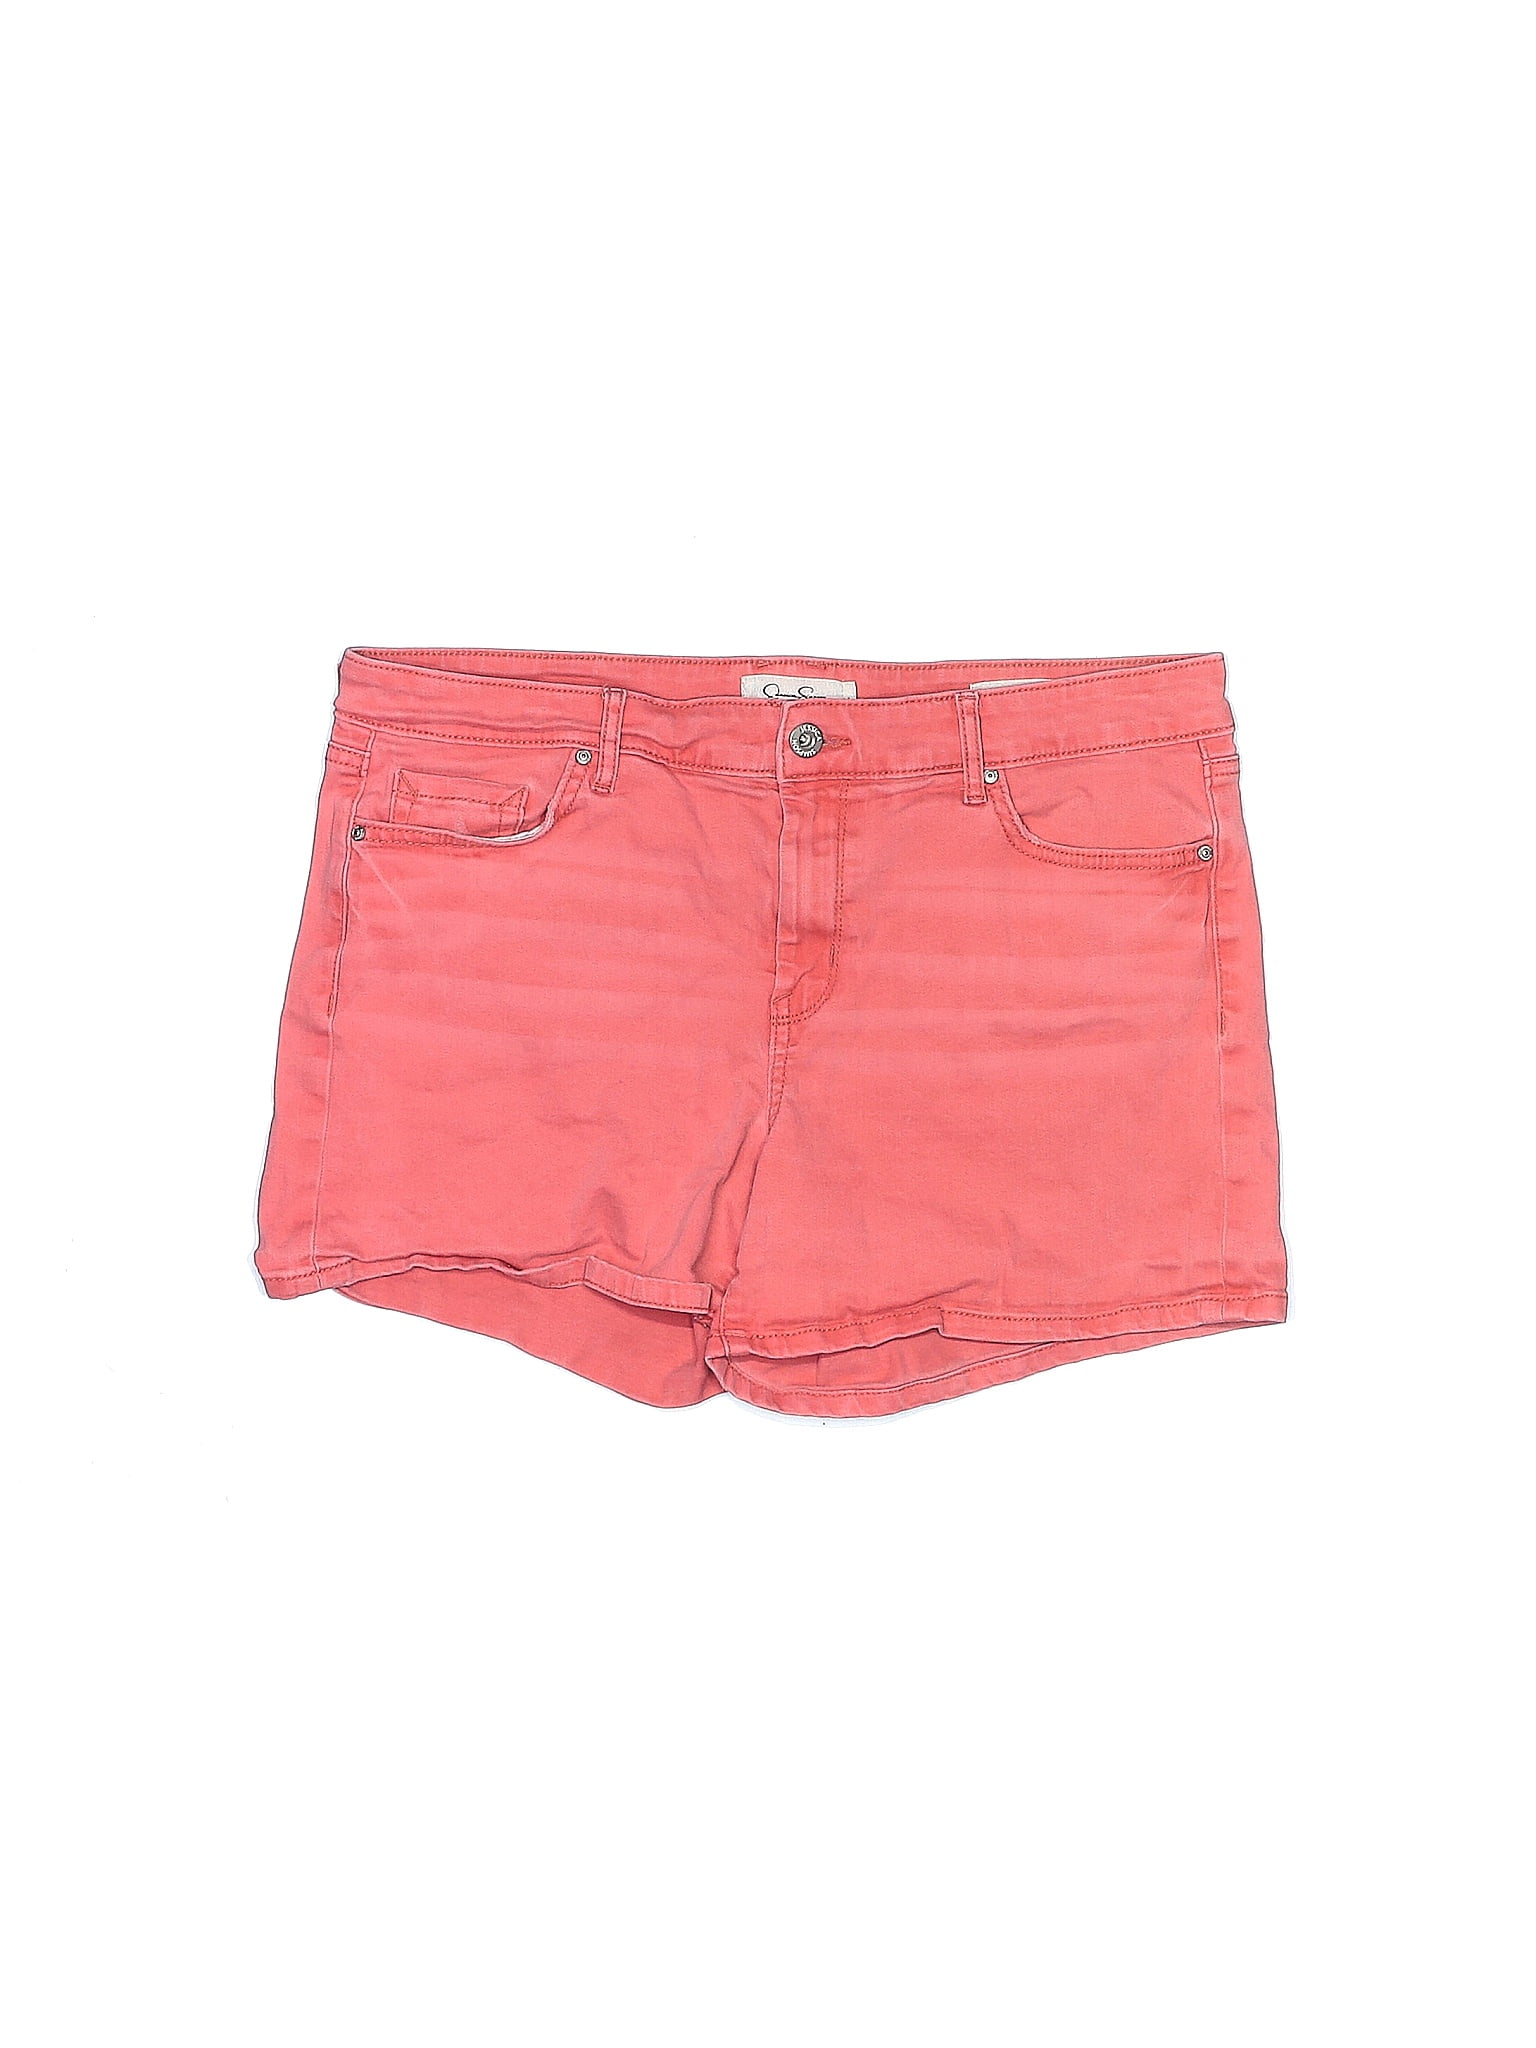 Jessica Simpson Pink Denim Shorts 31 Waist - 48% off | thredUP